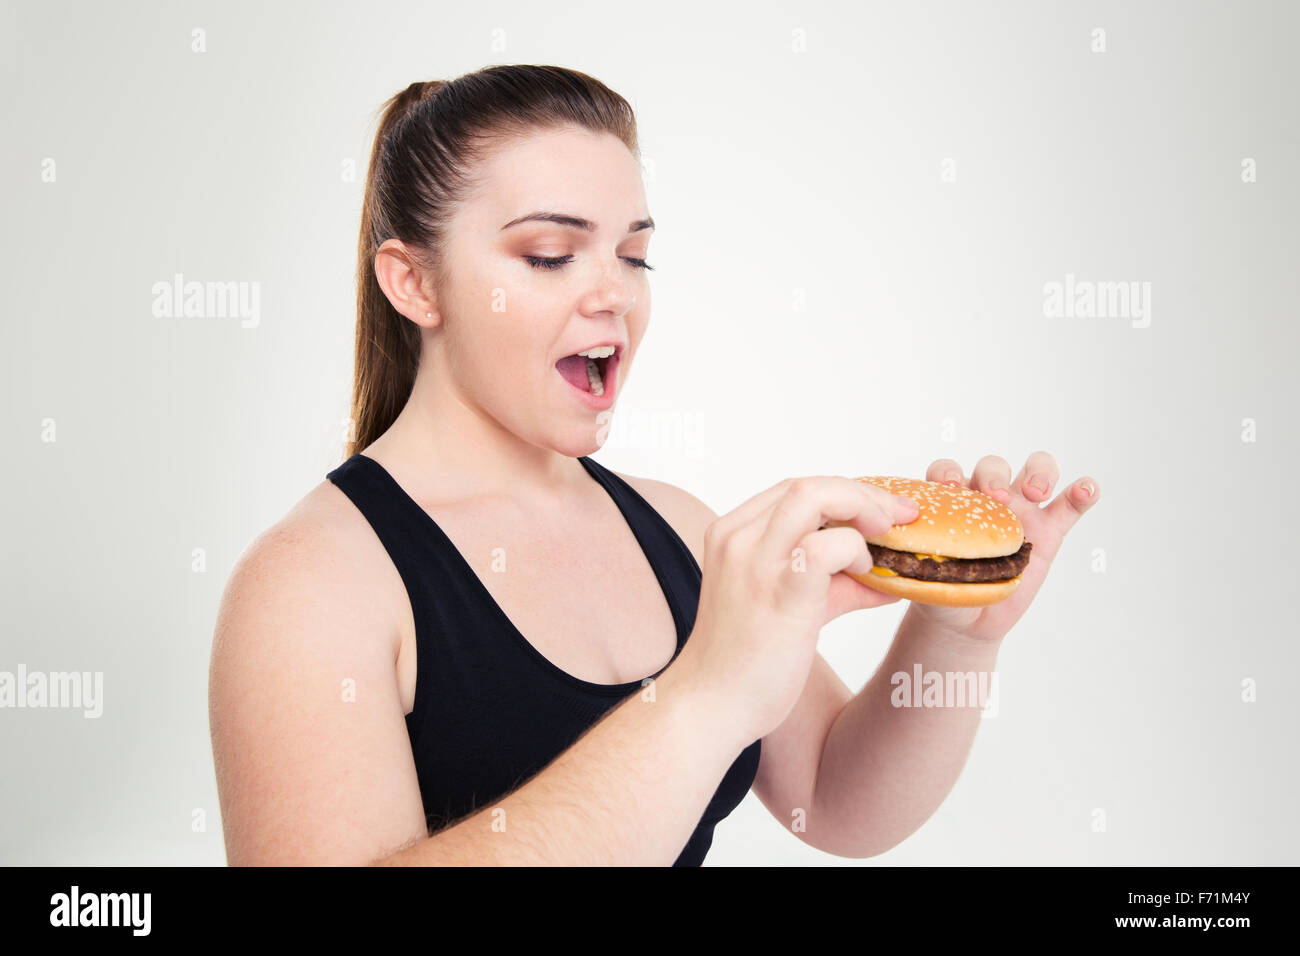 Ritratto di una donna grassa mangiare hamburger isolato su uno sfondo bianco Foto Stock